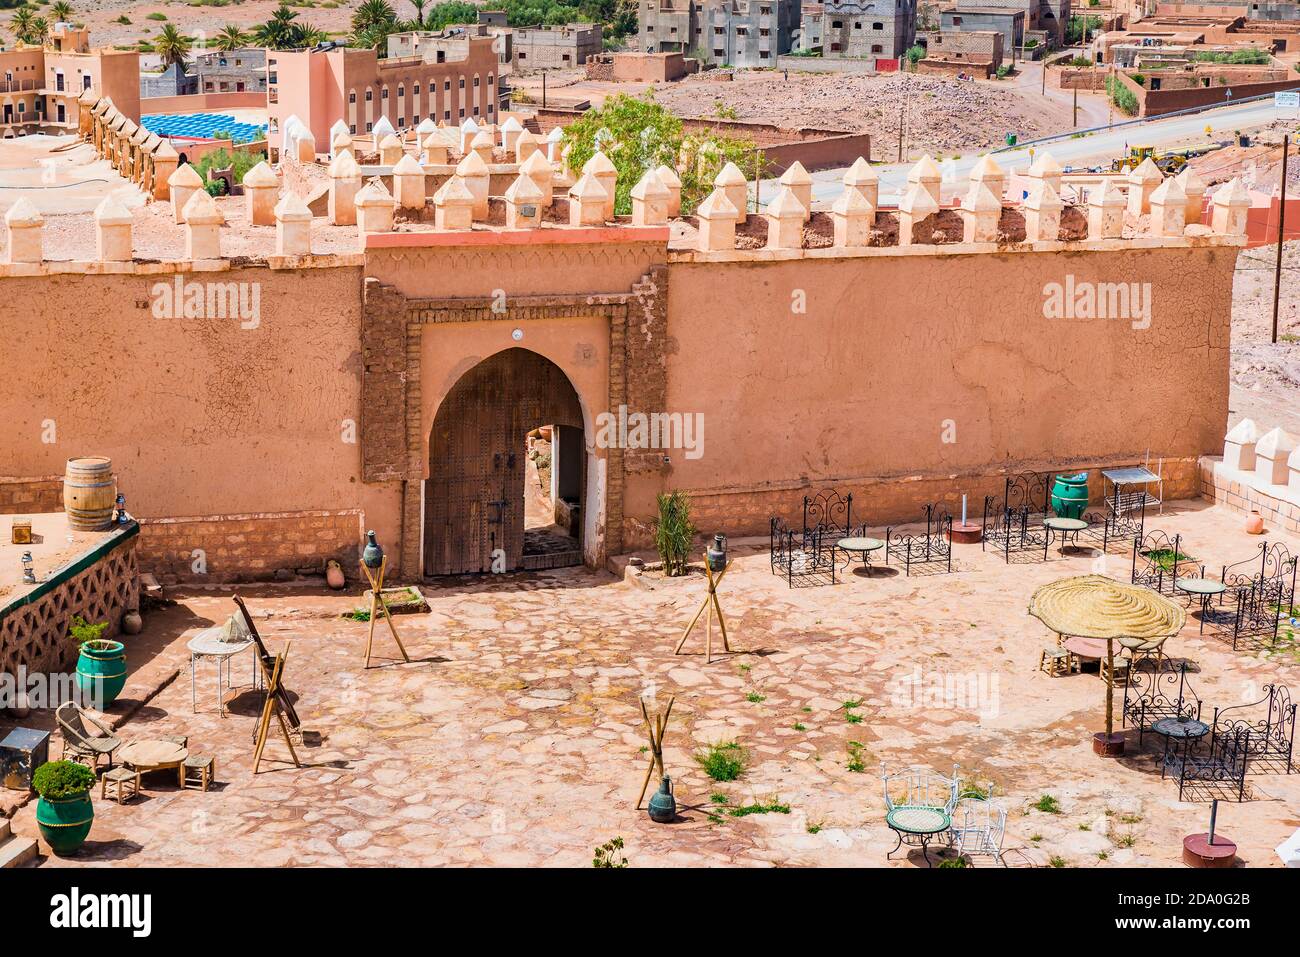 Der Hof der Kasbah von Tifoultoute ist eine Kasbah in der Provinz Ouarzazate, Marokko, 8 Kilometer westlich der Stadt Ouarzazate. Diese Festung belo Stockfoto